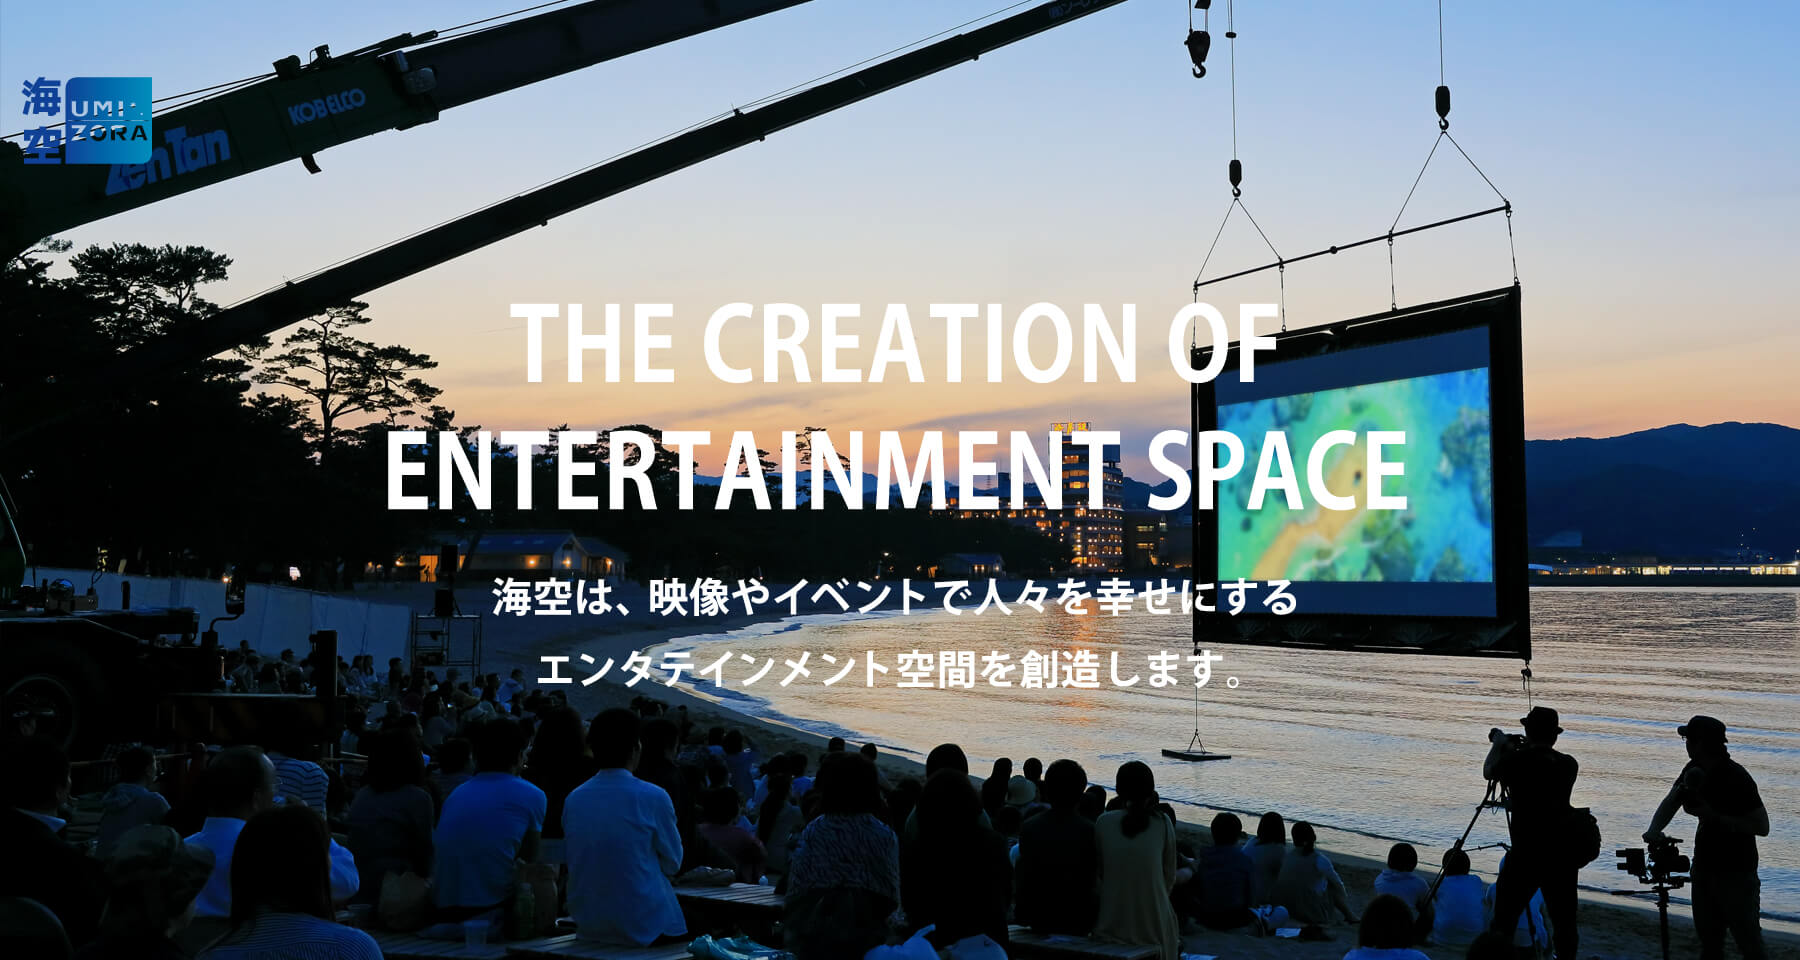 海空は、映像やイベントで人々を幸せにするエンタテインメント空間を創造します。